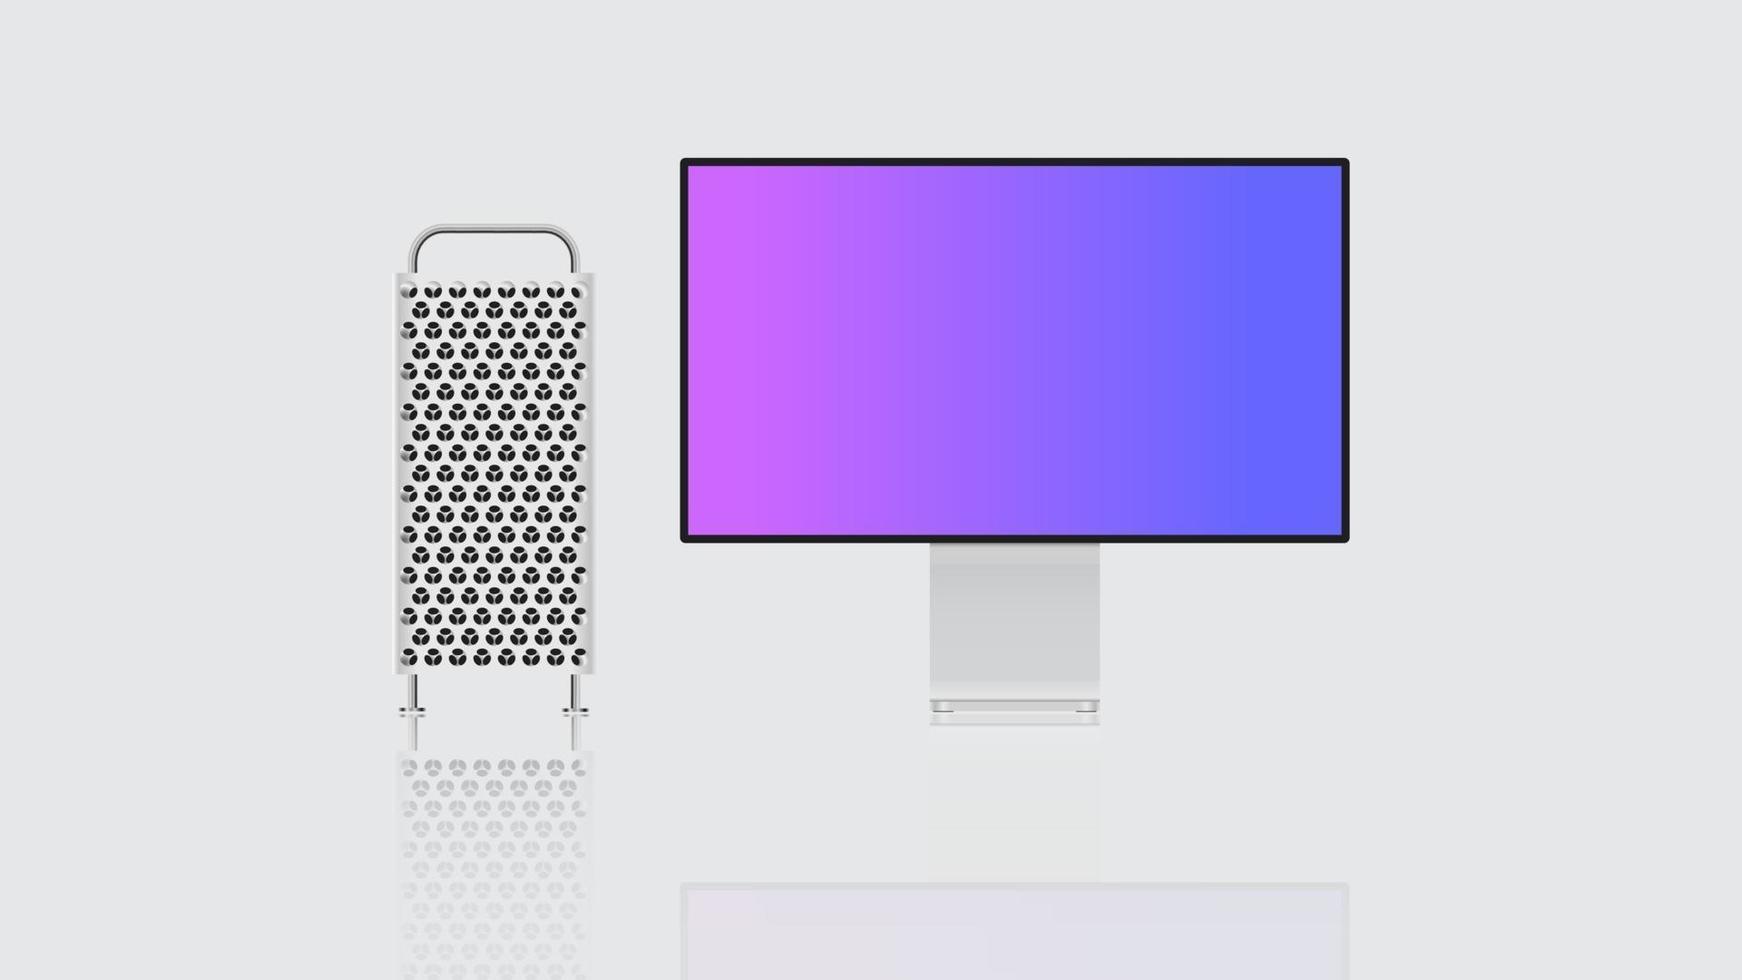 realistisk modern pc-illustration med skärm och bildskärm. stationära pc-mockups med tomma skärmar, framifrån. vektor